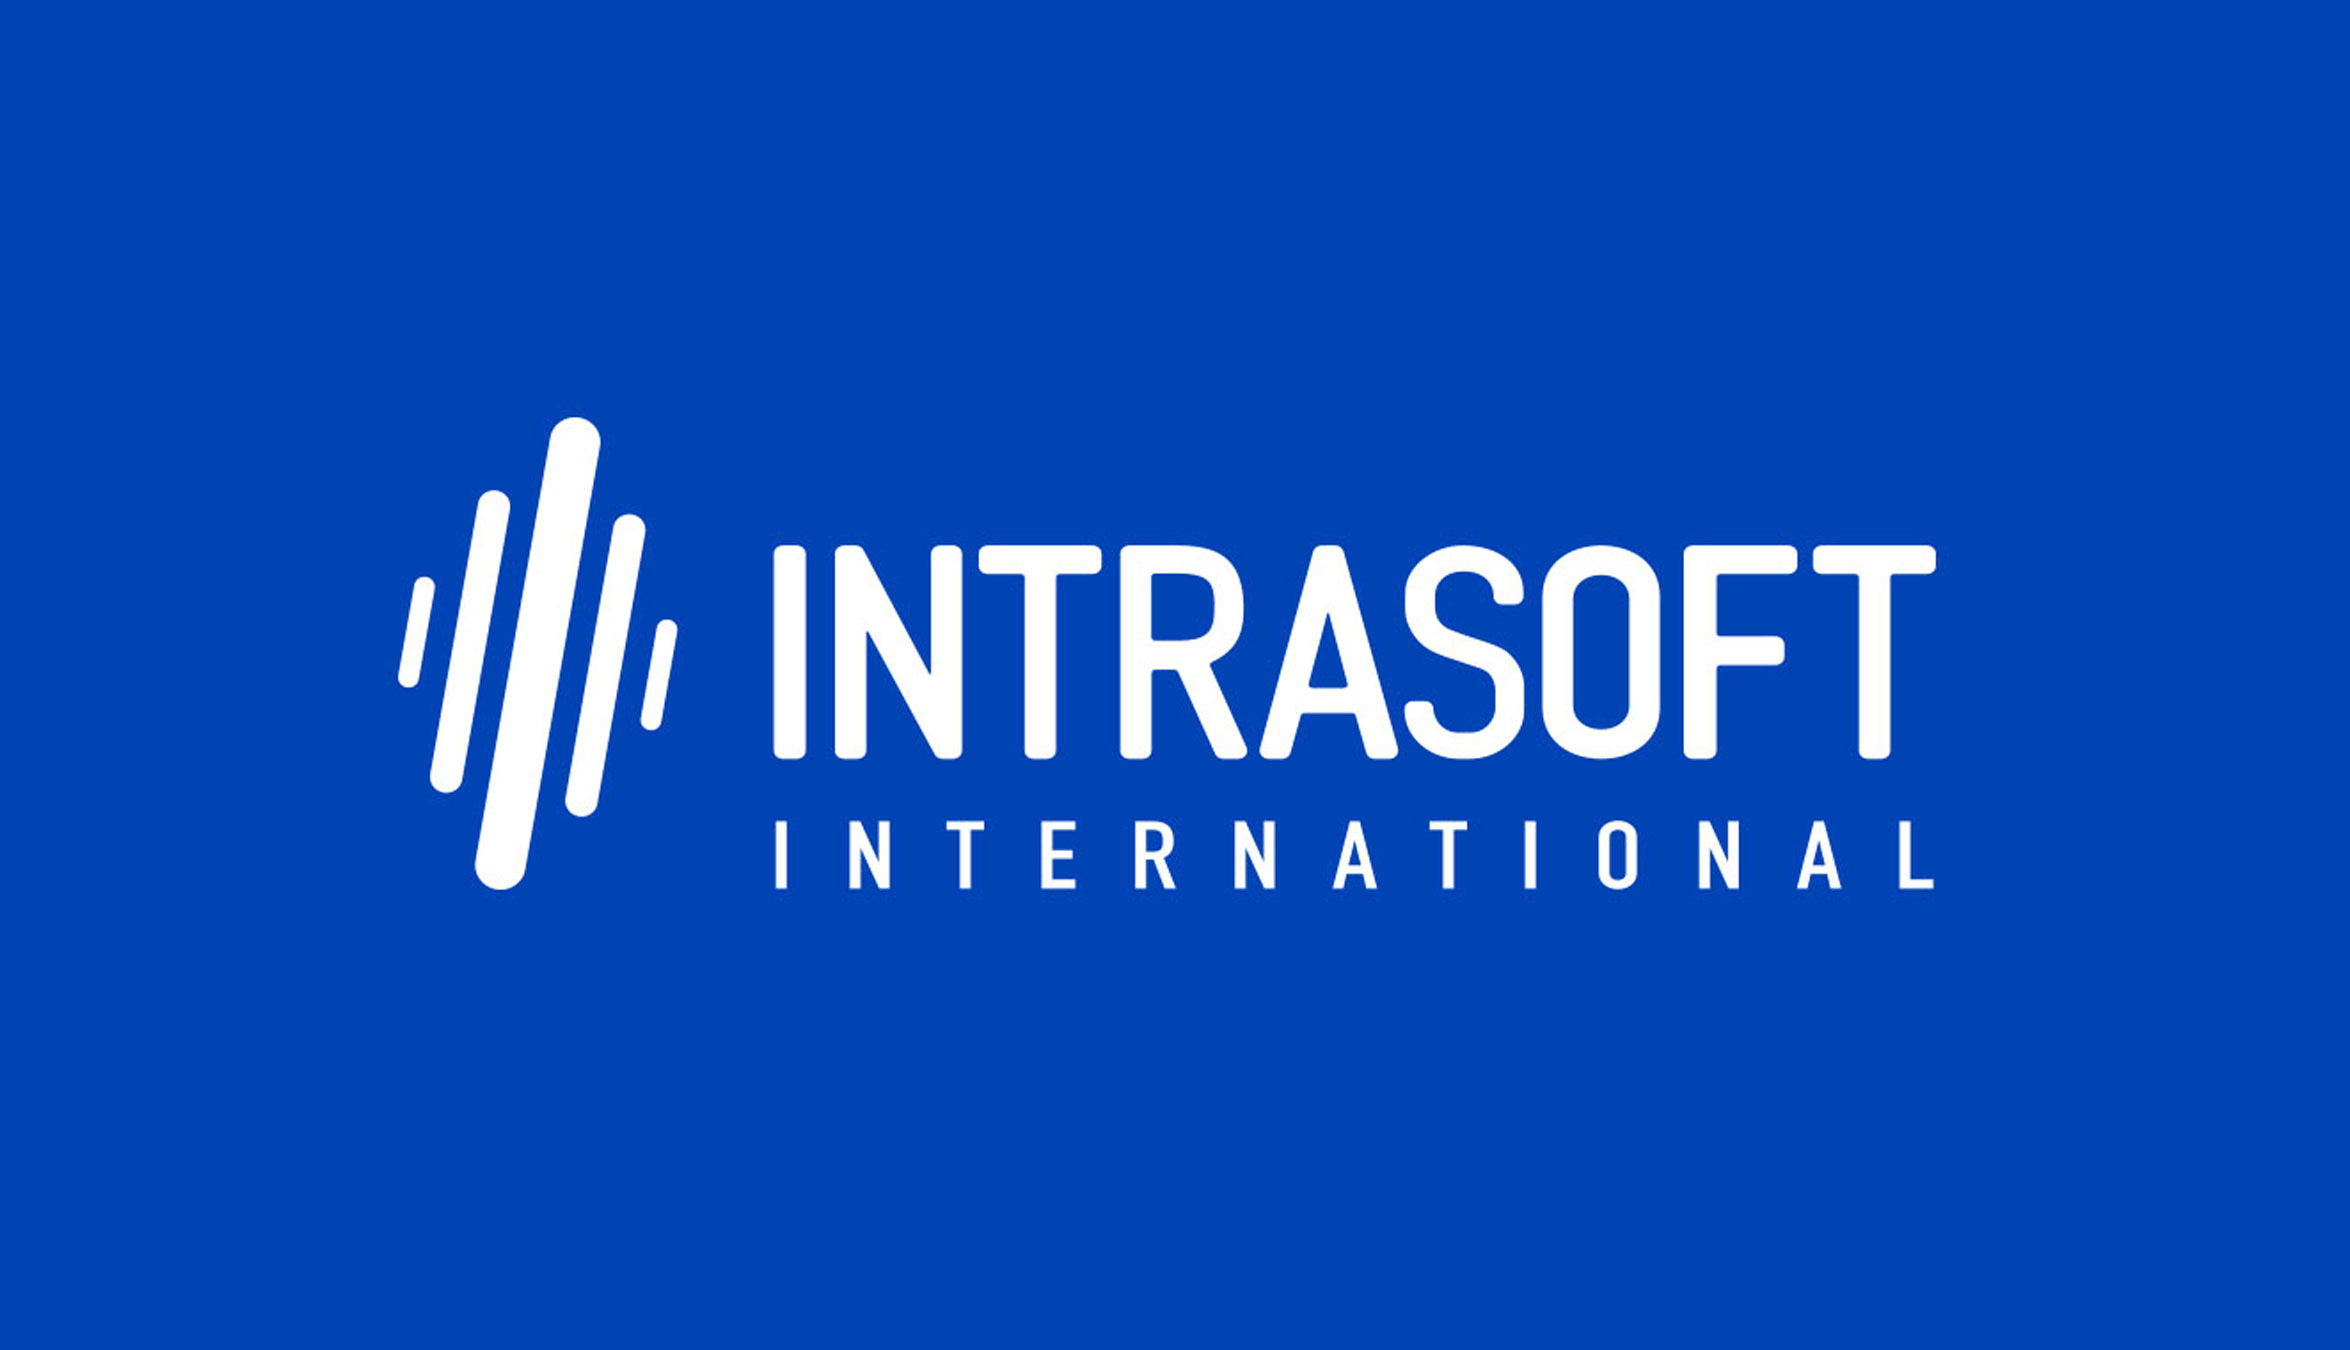 INTRASOFT International: Νέο έργο στη Γενική Διεύθυνση Πληροφορικής της Ευρωπαϊκής Επιτροπής